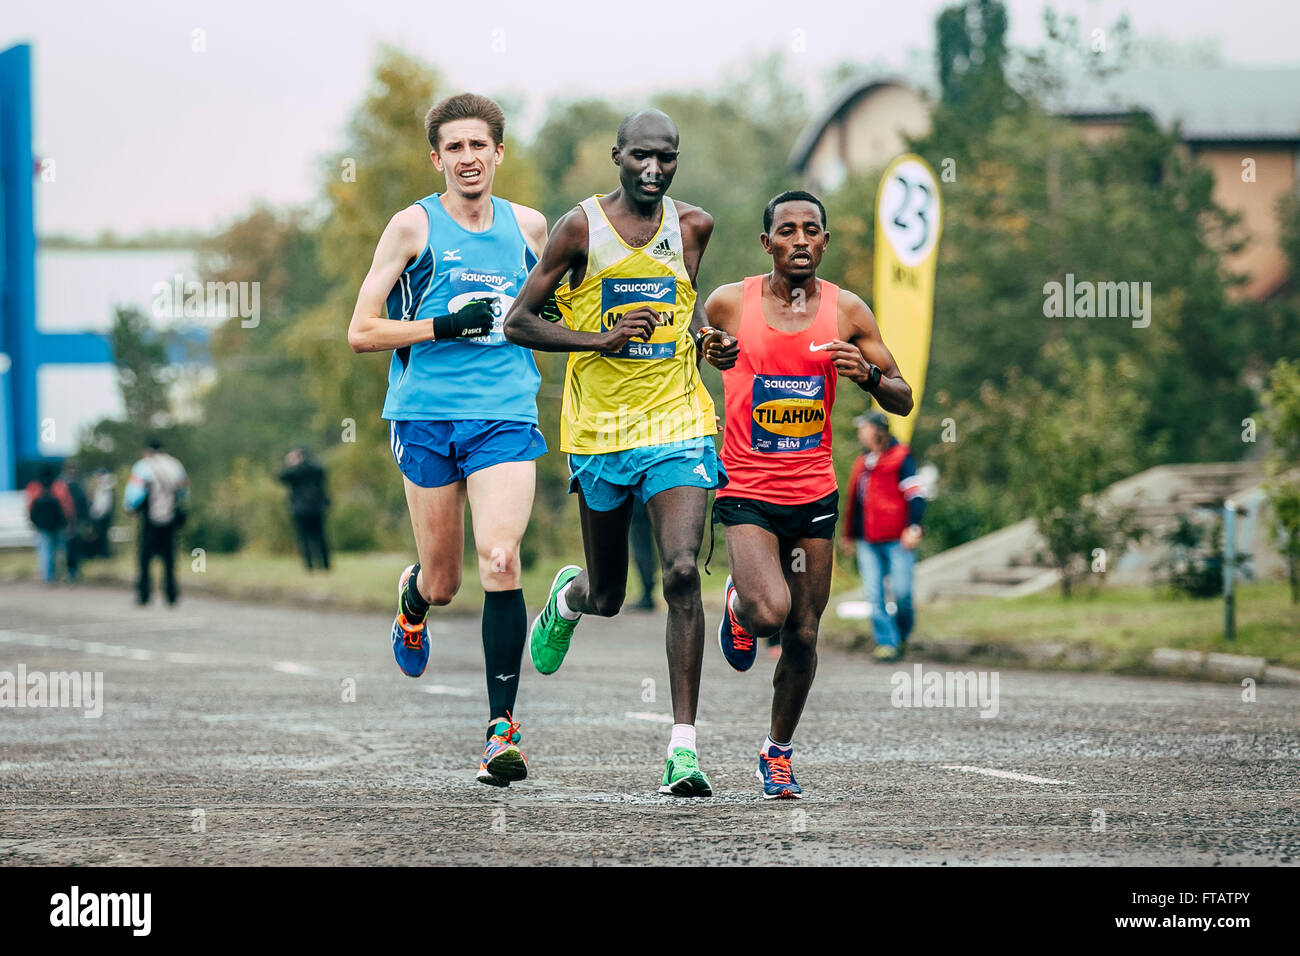 Omsk, Rusia - Septiembre 20, 2015: grupo de corredores con Labán Kipkemoi keniano Moiben líder durante la carrera de maratón siberiano Foto de stock